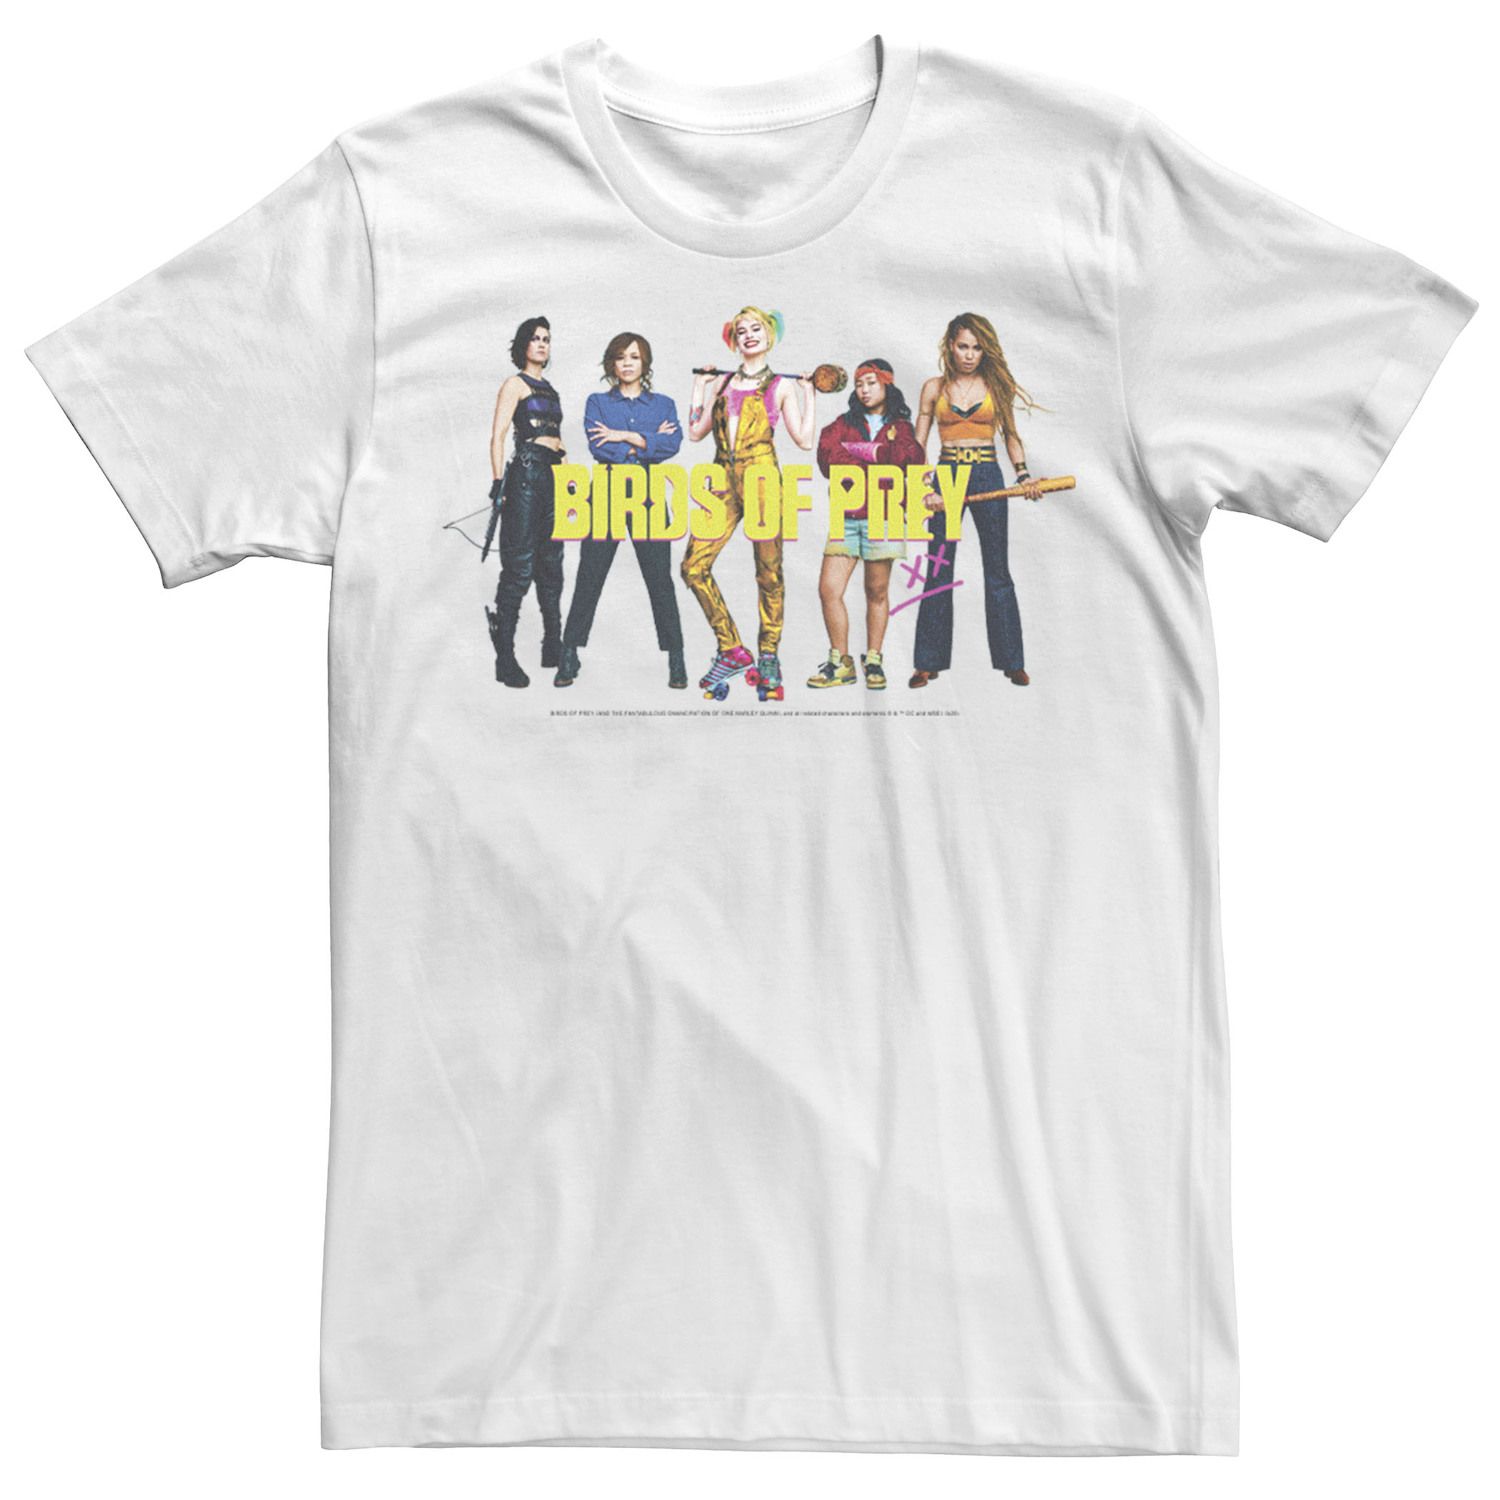 цена Мужская футболка с групповым портретом для девочек «Хищные птицы» DC Comics